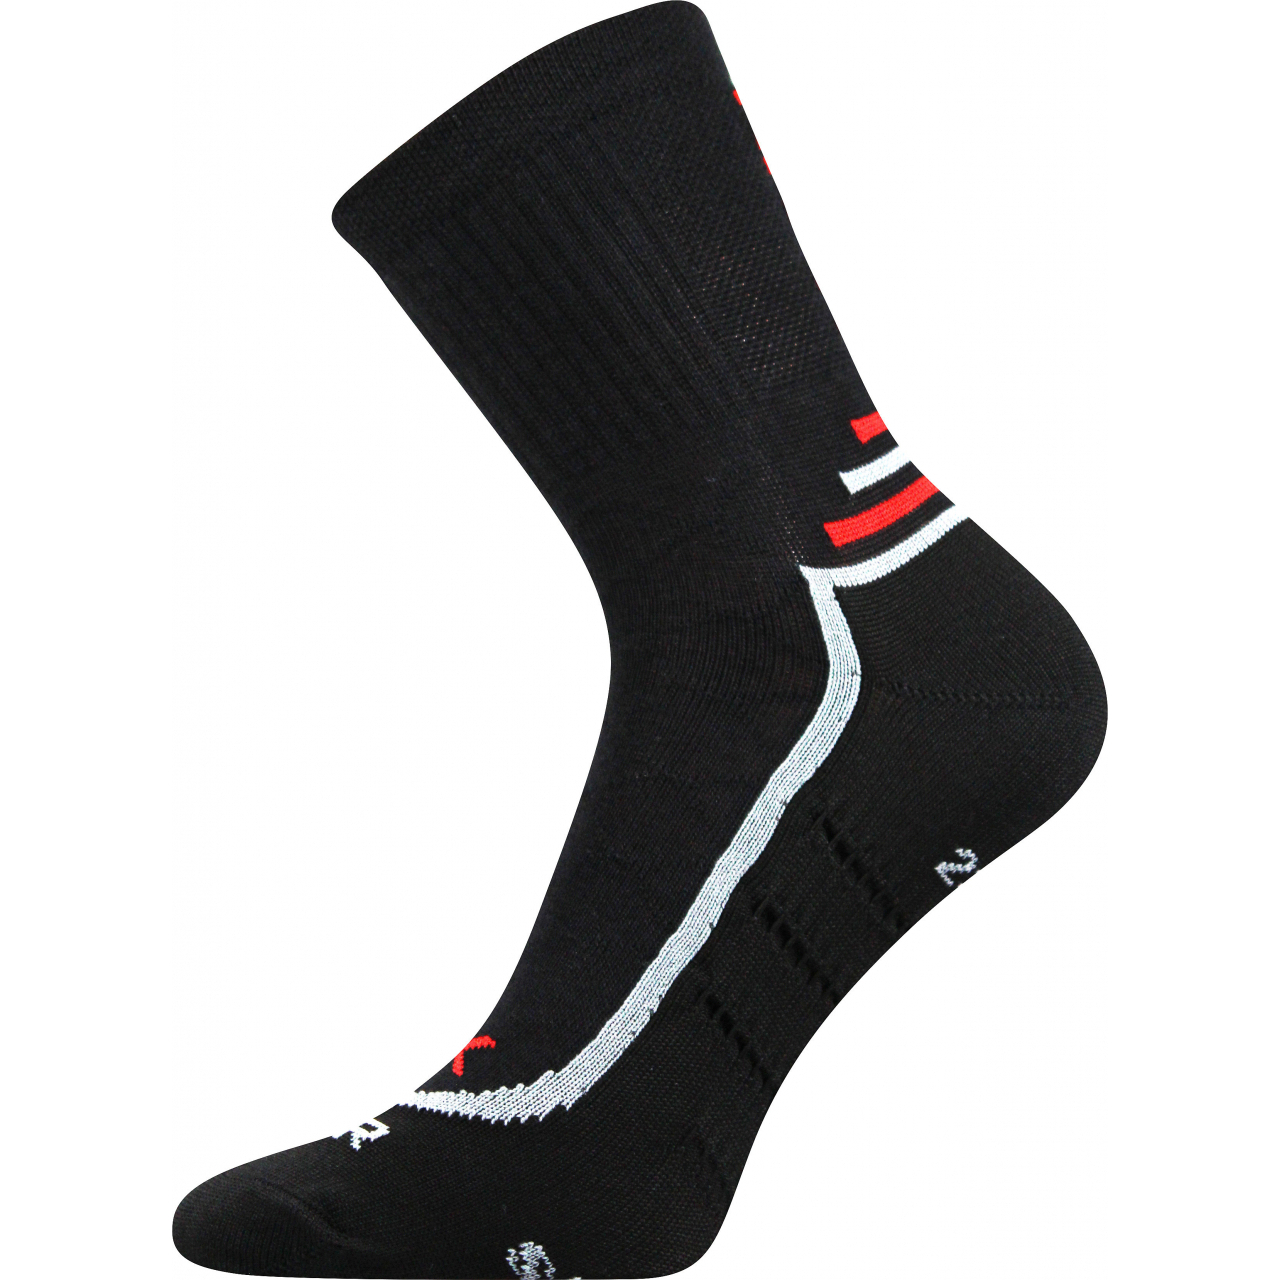 Ponožky sportovní unisex Voxx Vertigo - černé, 35-38